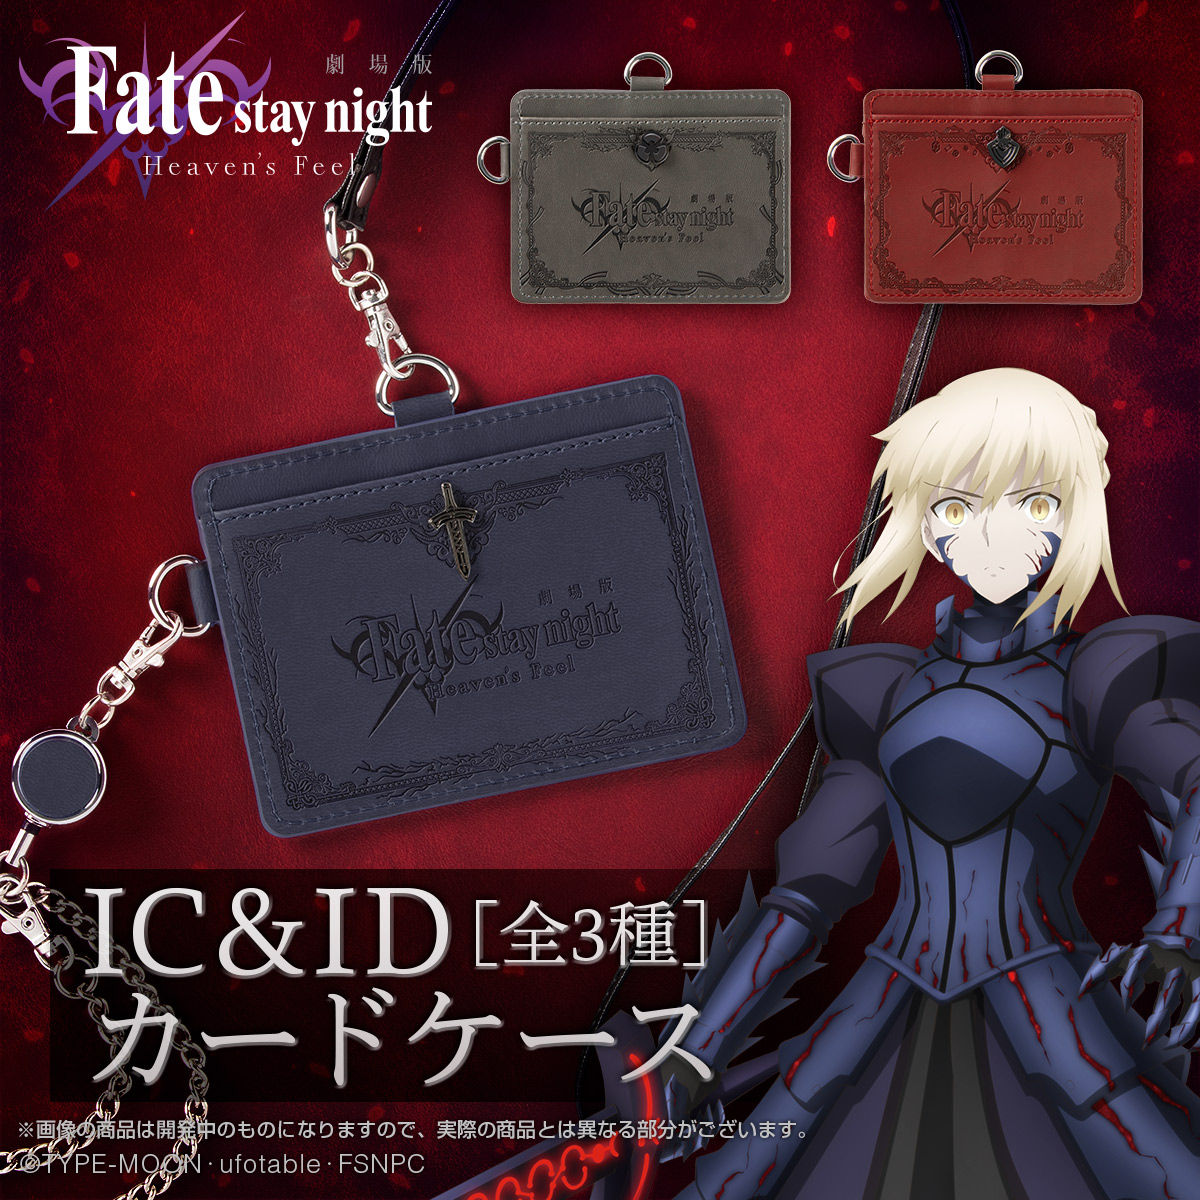 劇場版「Fate/stay night [Heaven's Feel]」IC&IDカードケース